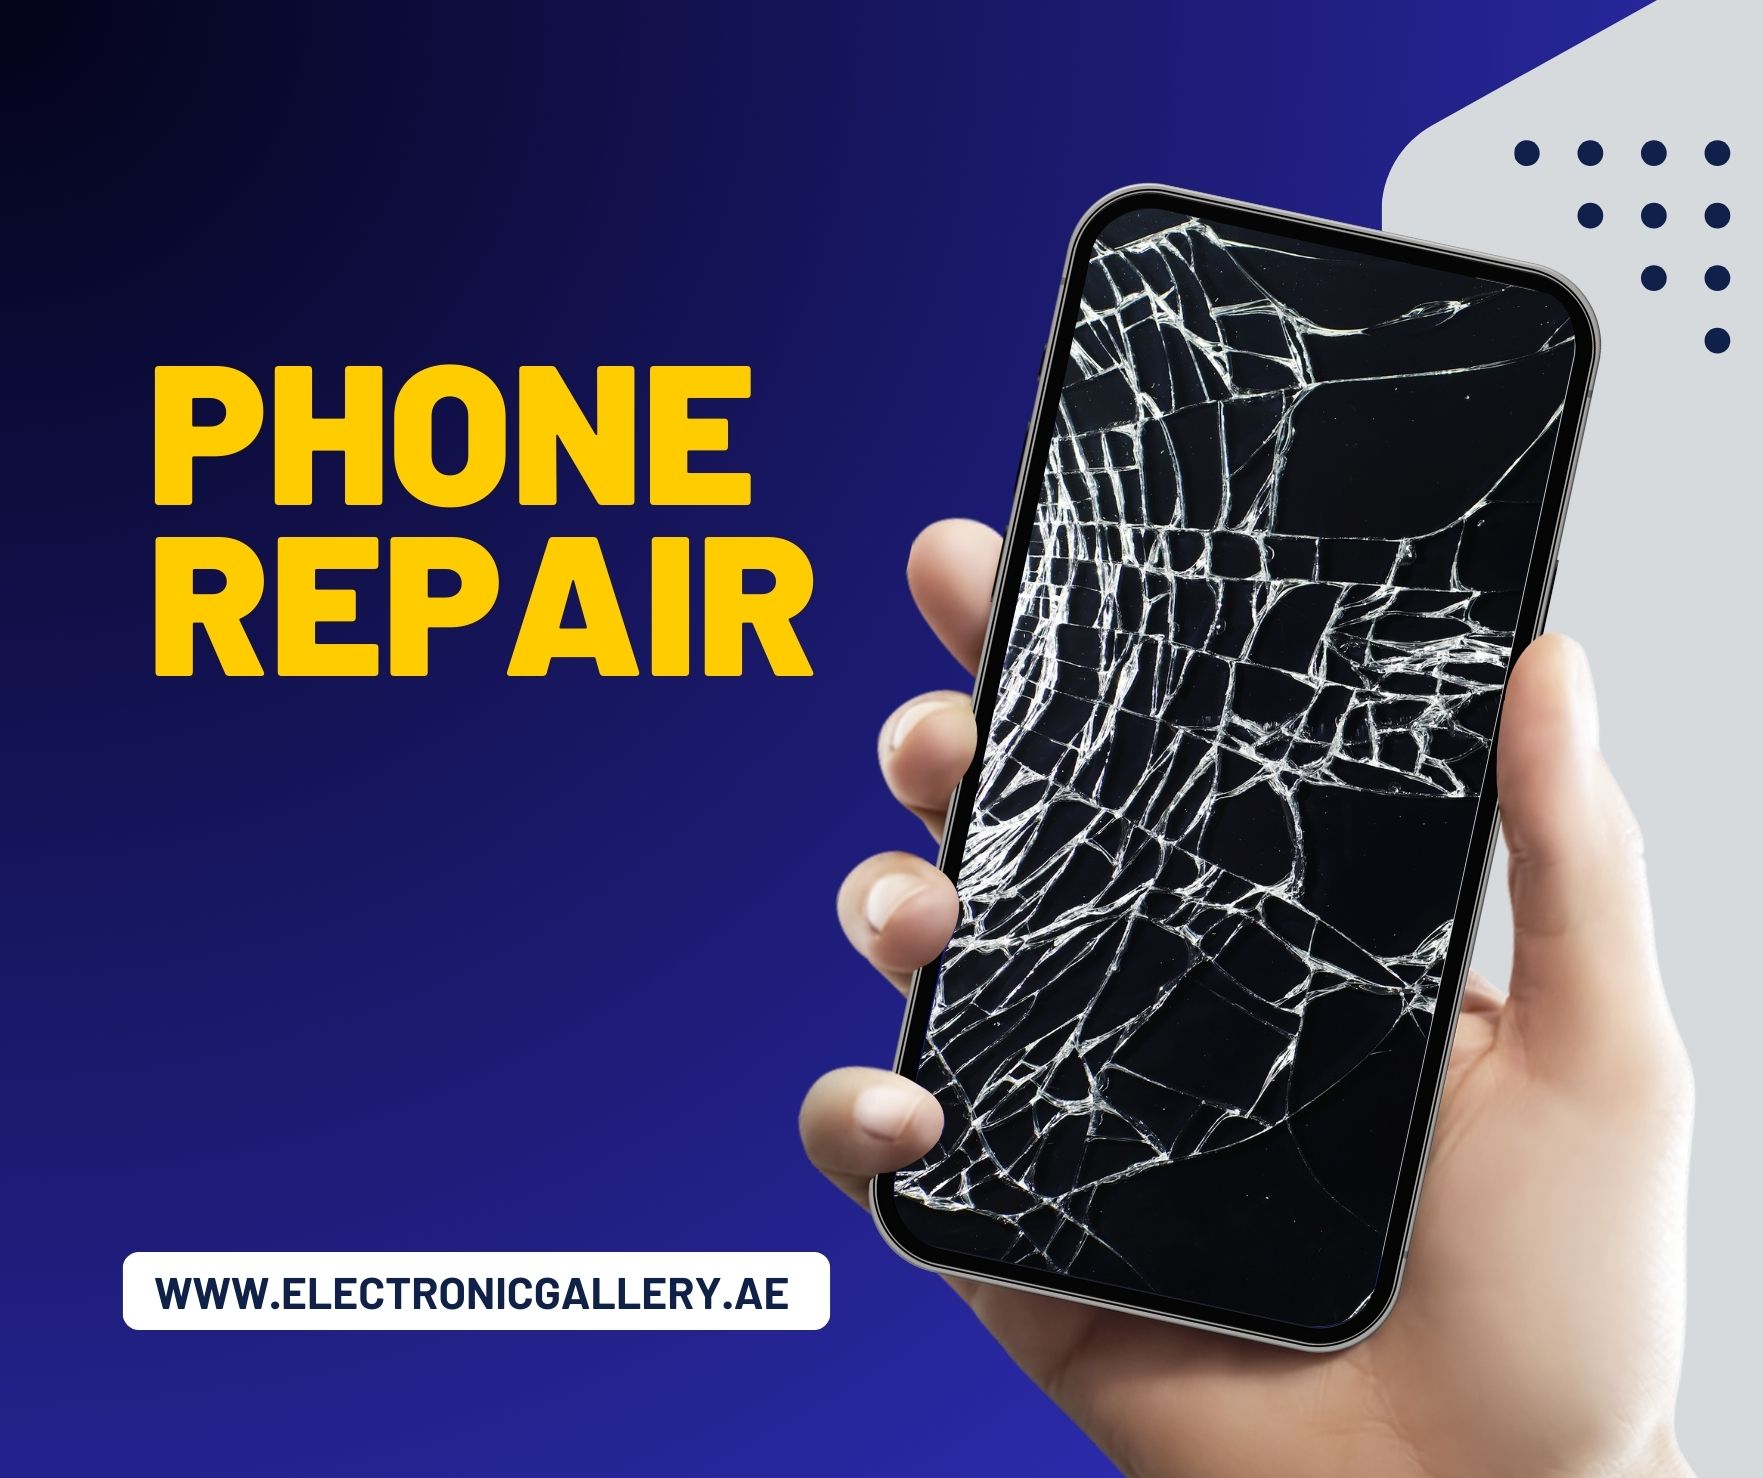 Phone repair at Electronic Gallery